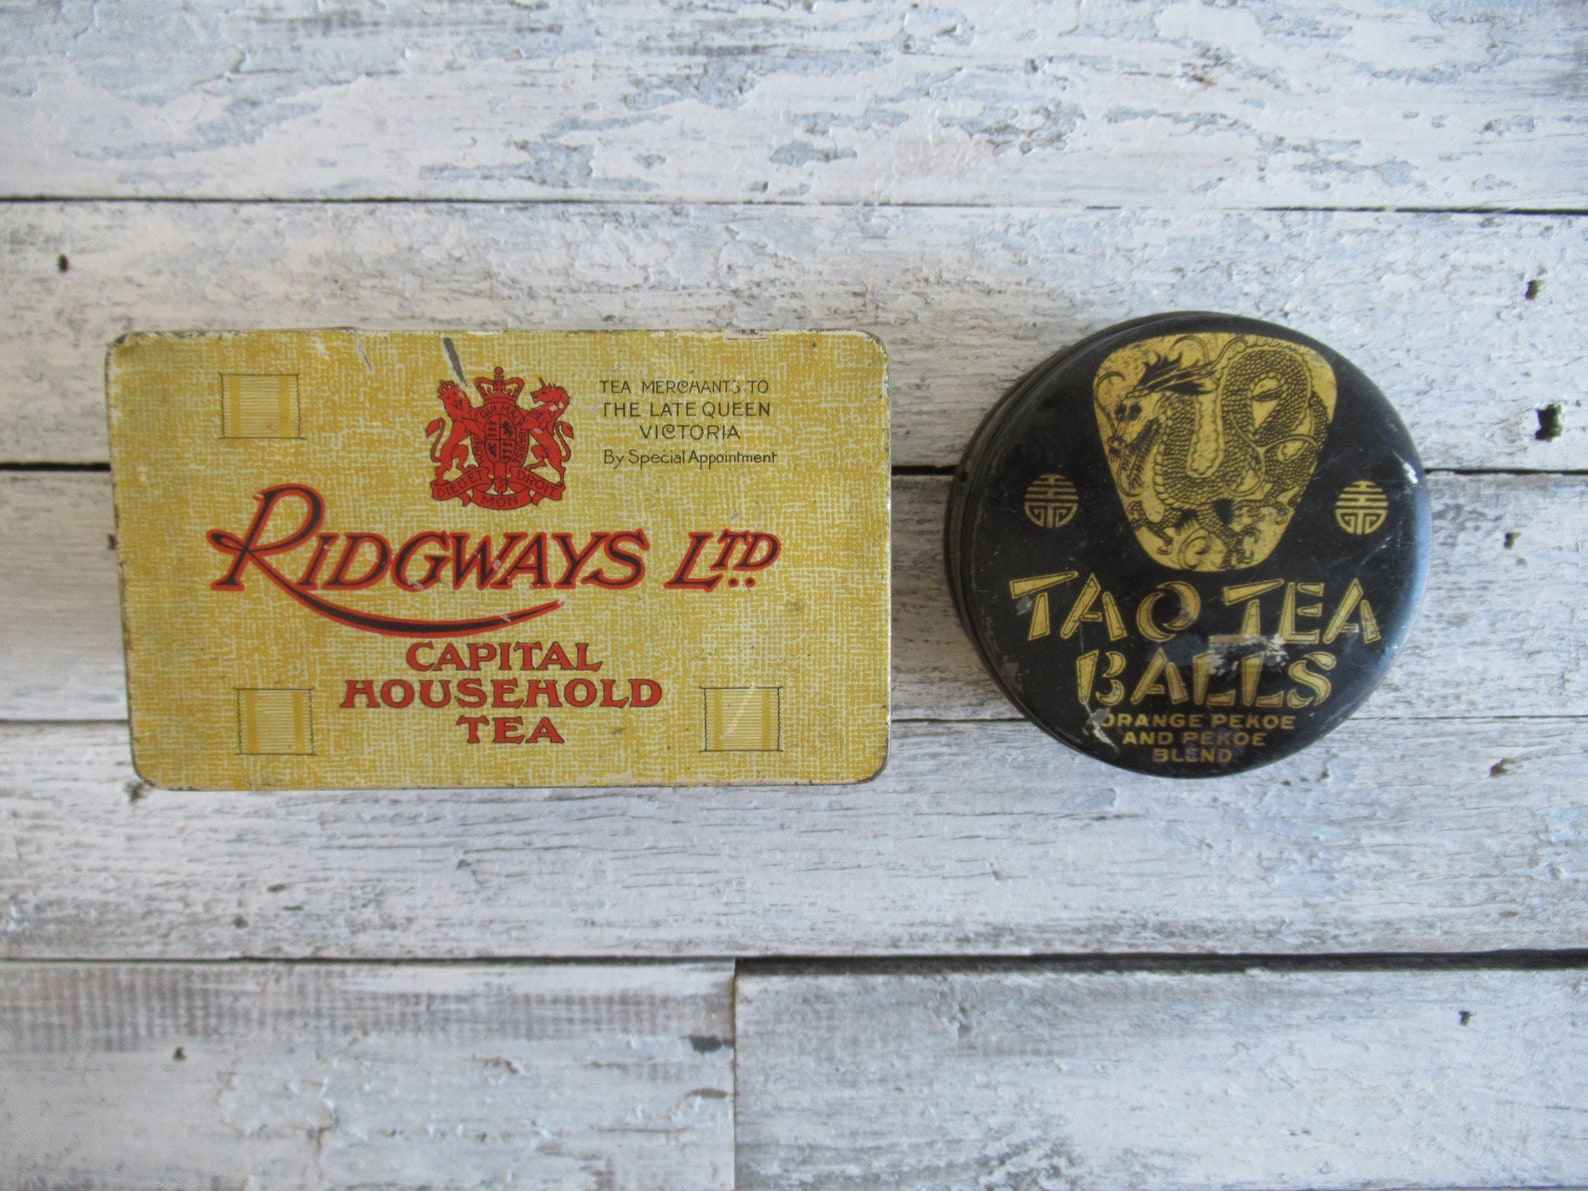 Vintage Tea Tins Tao Tea Balls Ridgways Ltd. Household Tea | Etsy